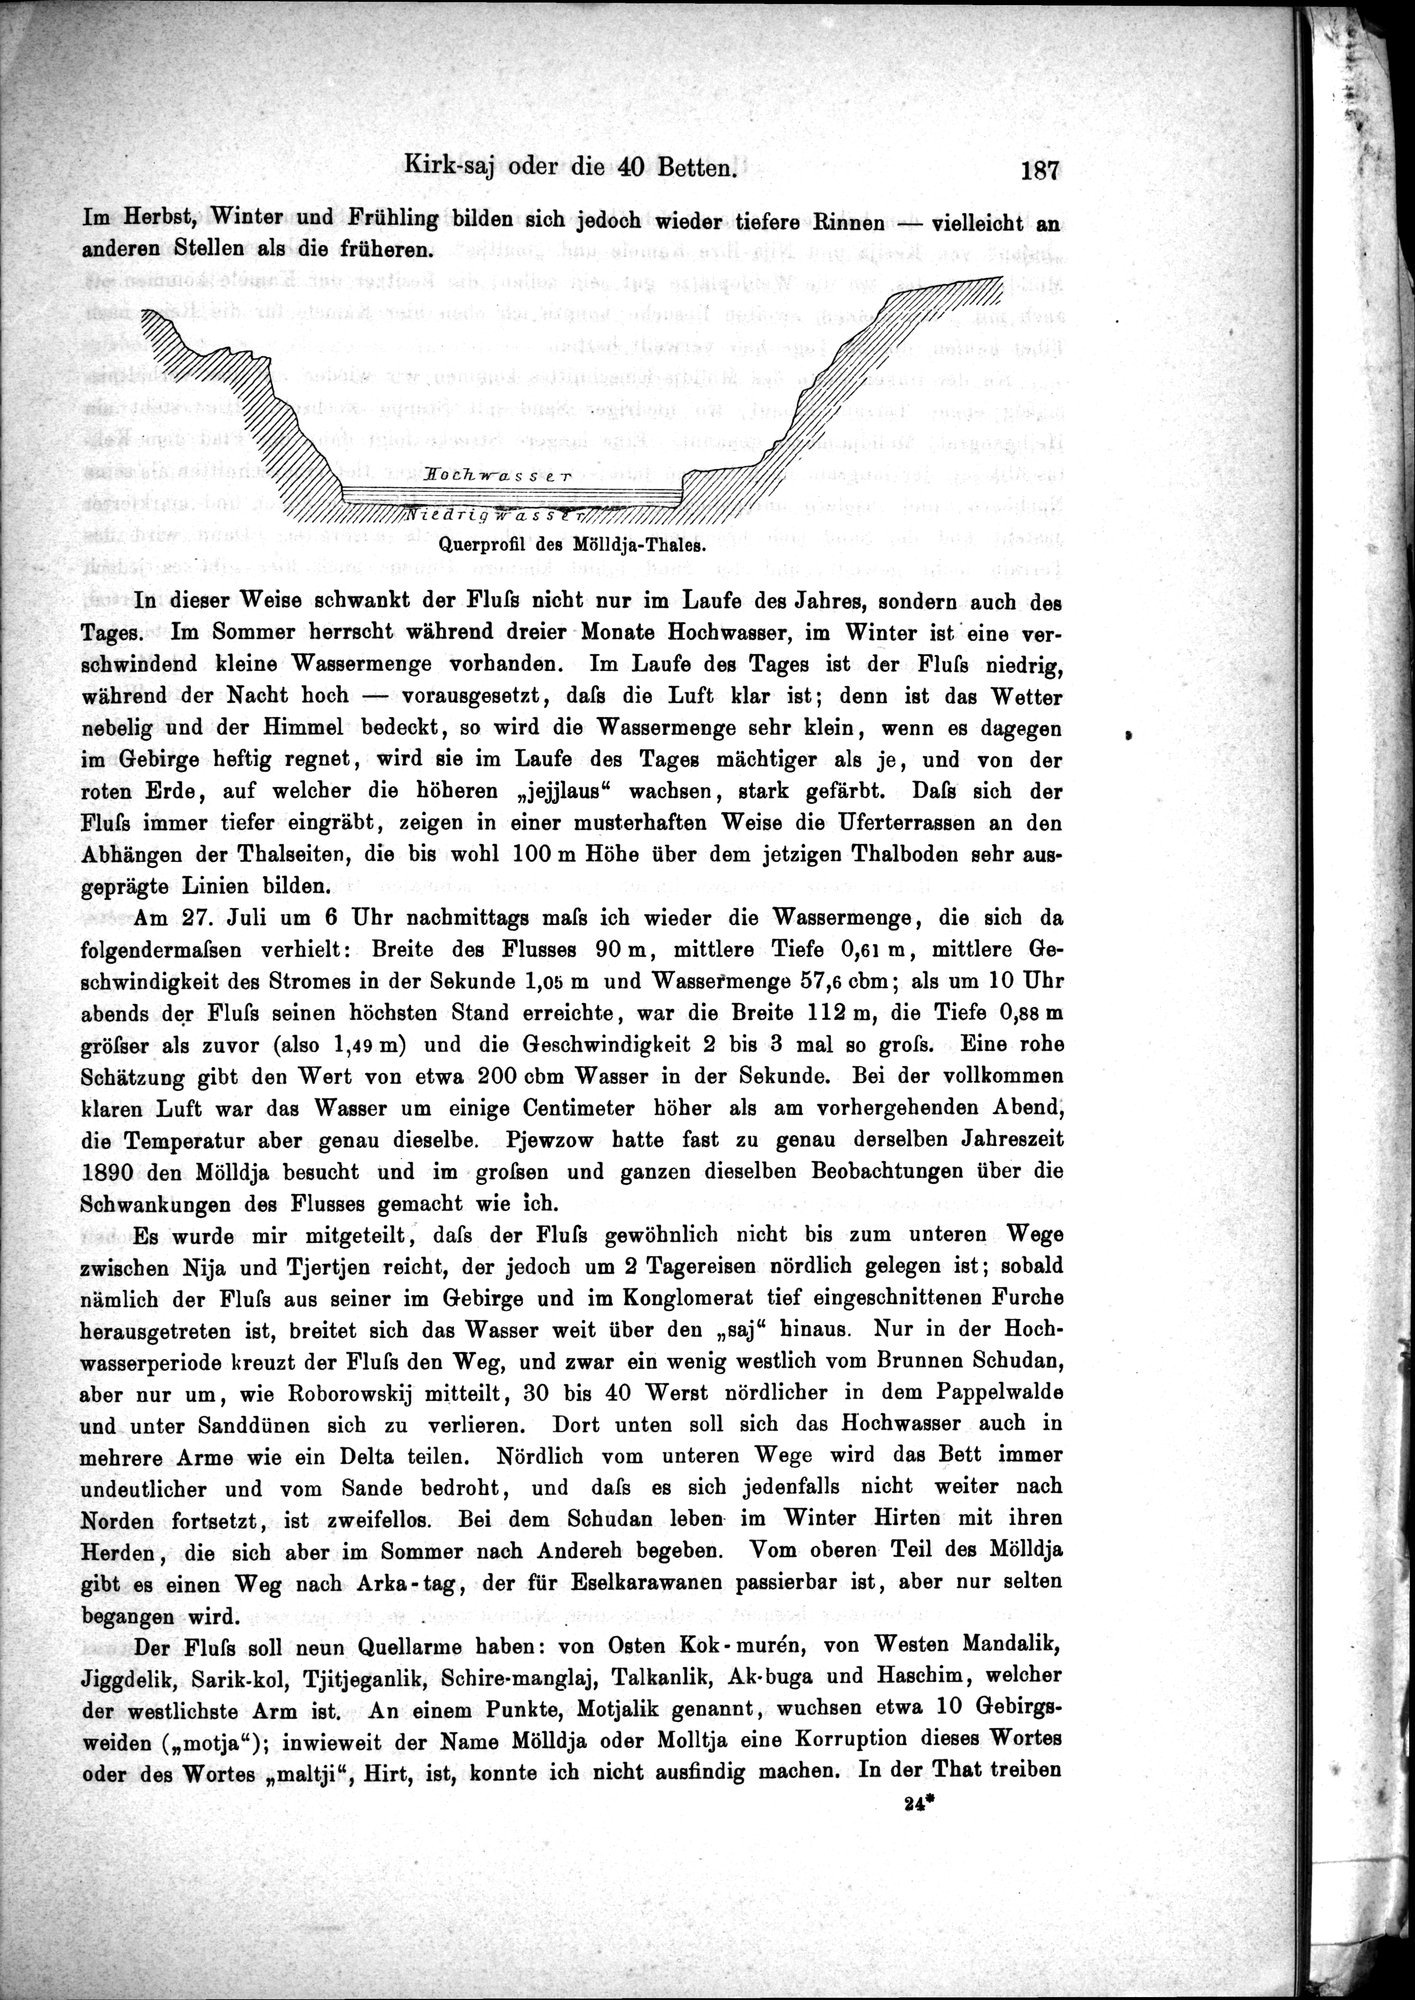 Die Geographische-Wissenschaftlichen Ergebnisse meiner Reisen in Zentralasien, 1894-1897 : vol.1 / Page 199 (Grayscale High Resolution Image)